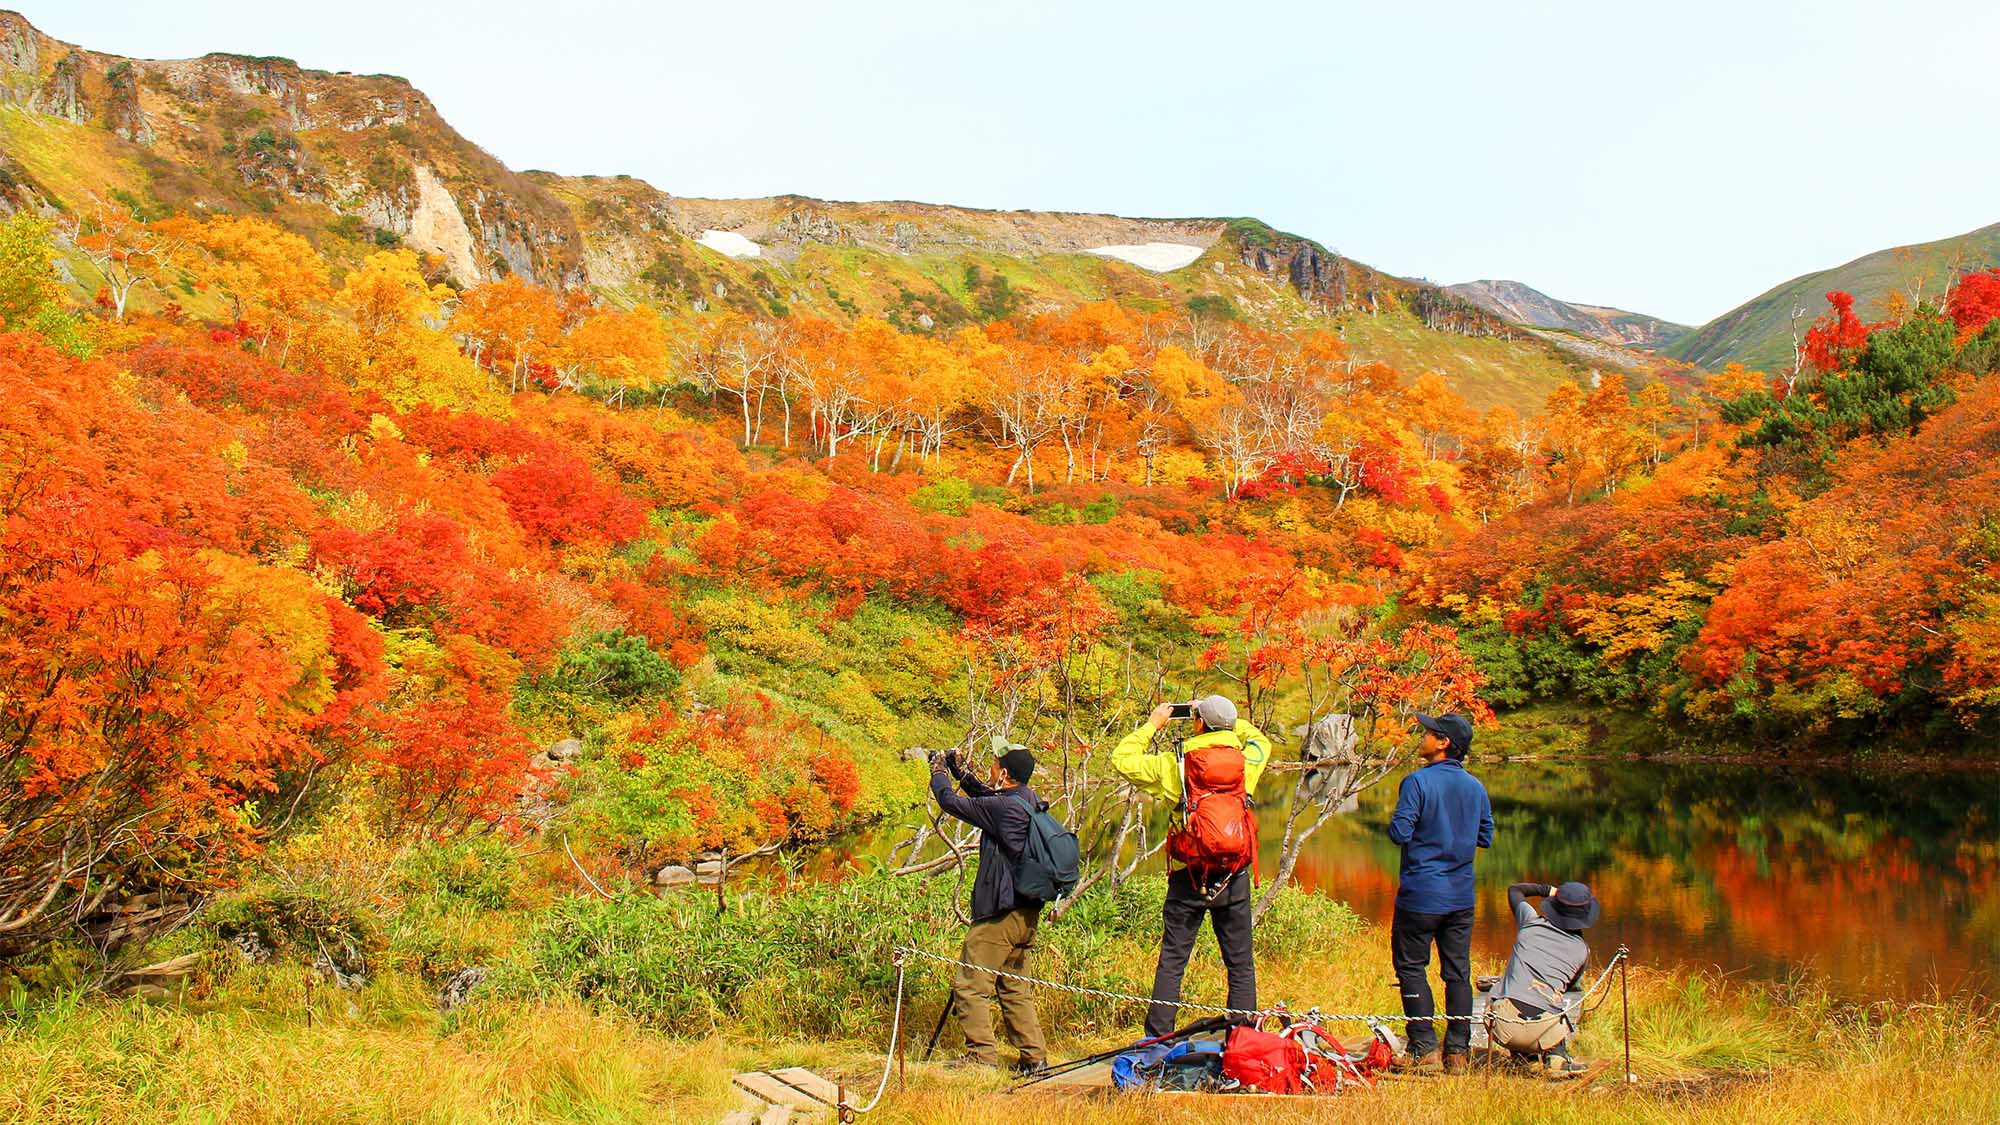 ・大雪山の秋の様子　見事な紅葉に胸が躍ります